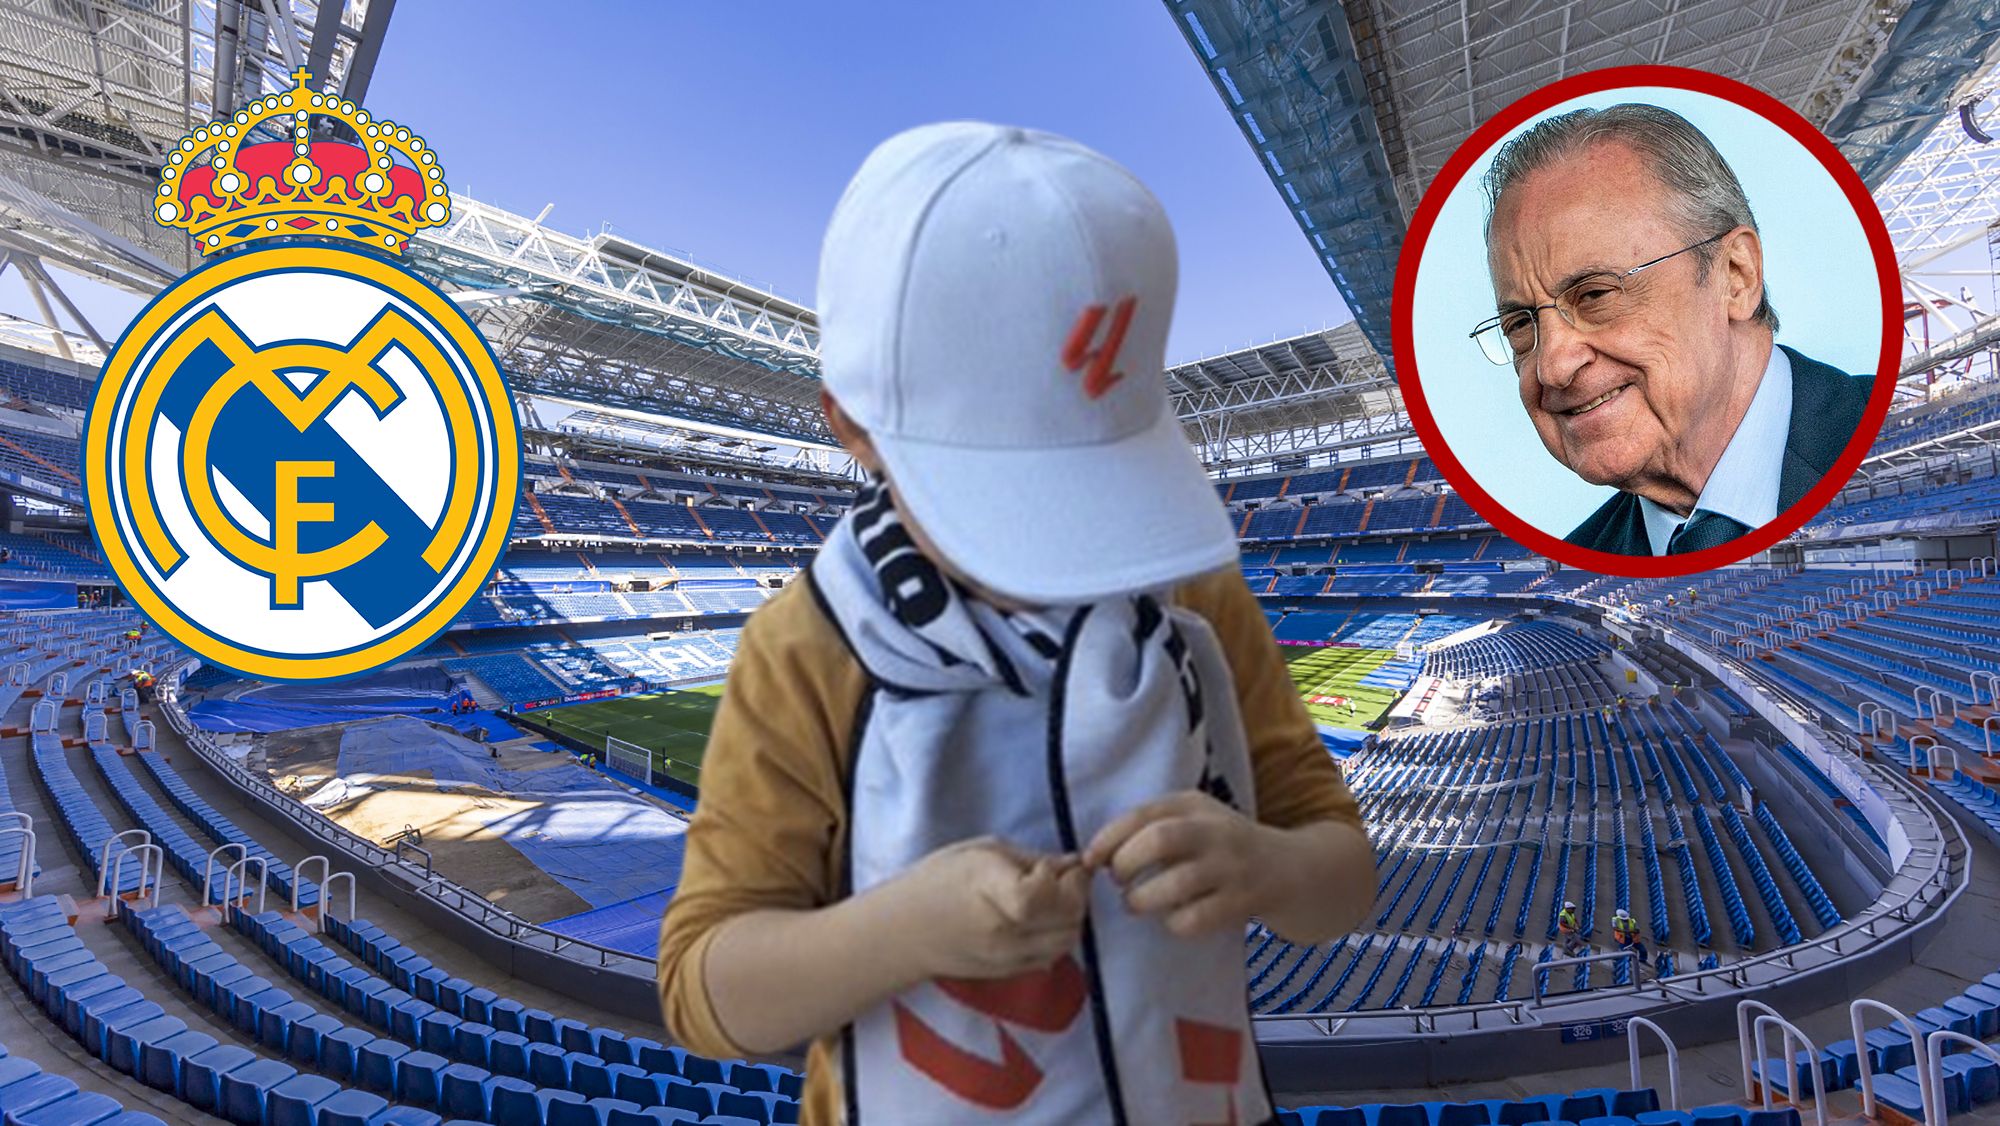 Real Madrid: El bonito gesto del Madrid con un niño con autismo que sufrió  insultos en 'El Clásico